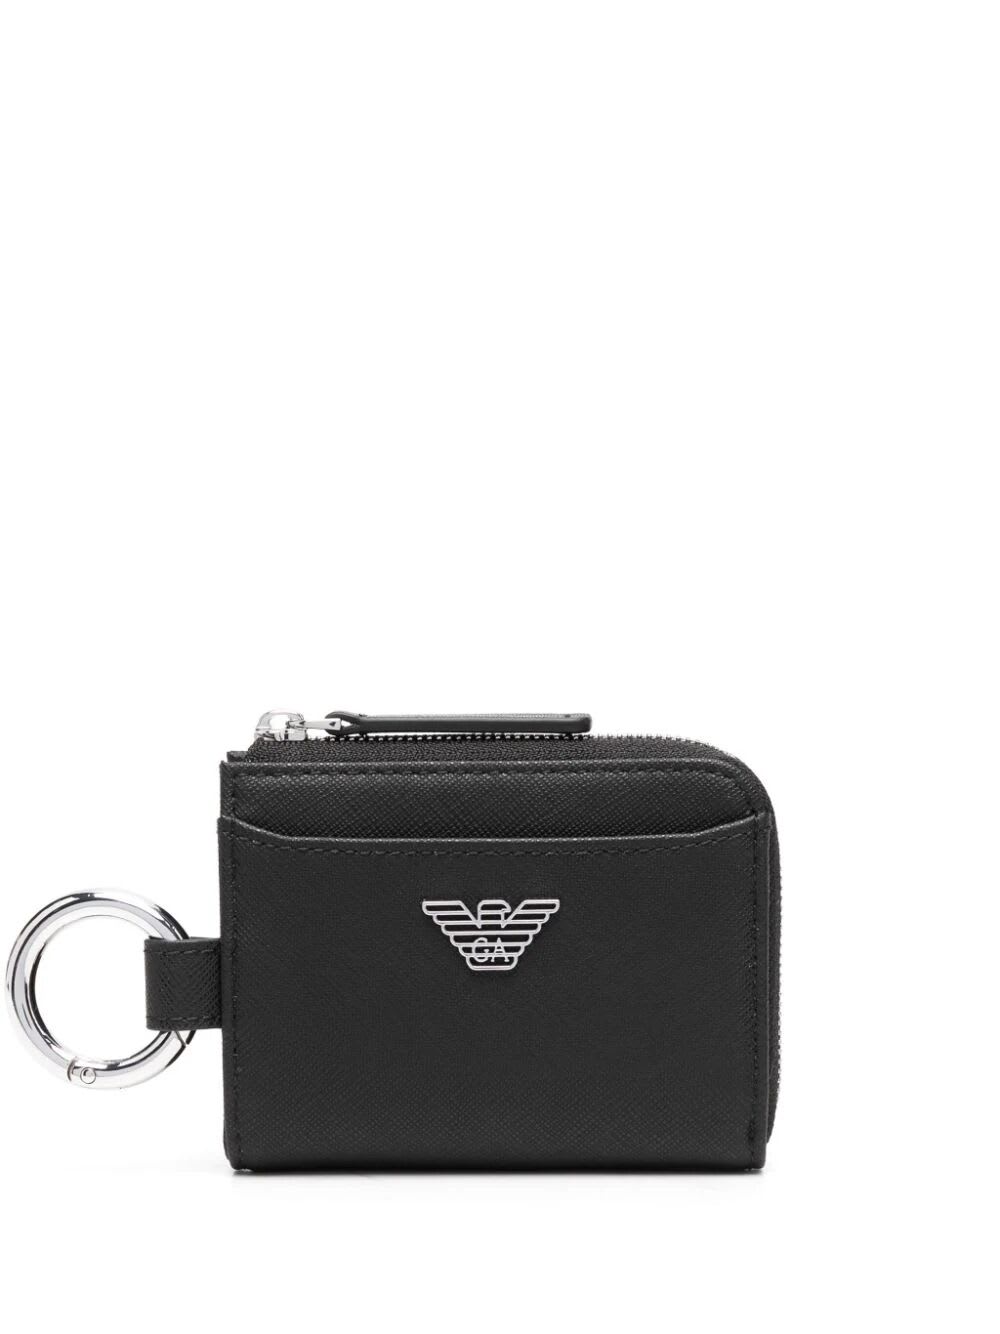 Emporio Armani Man`s Compact Wallet In Black